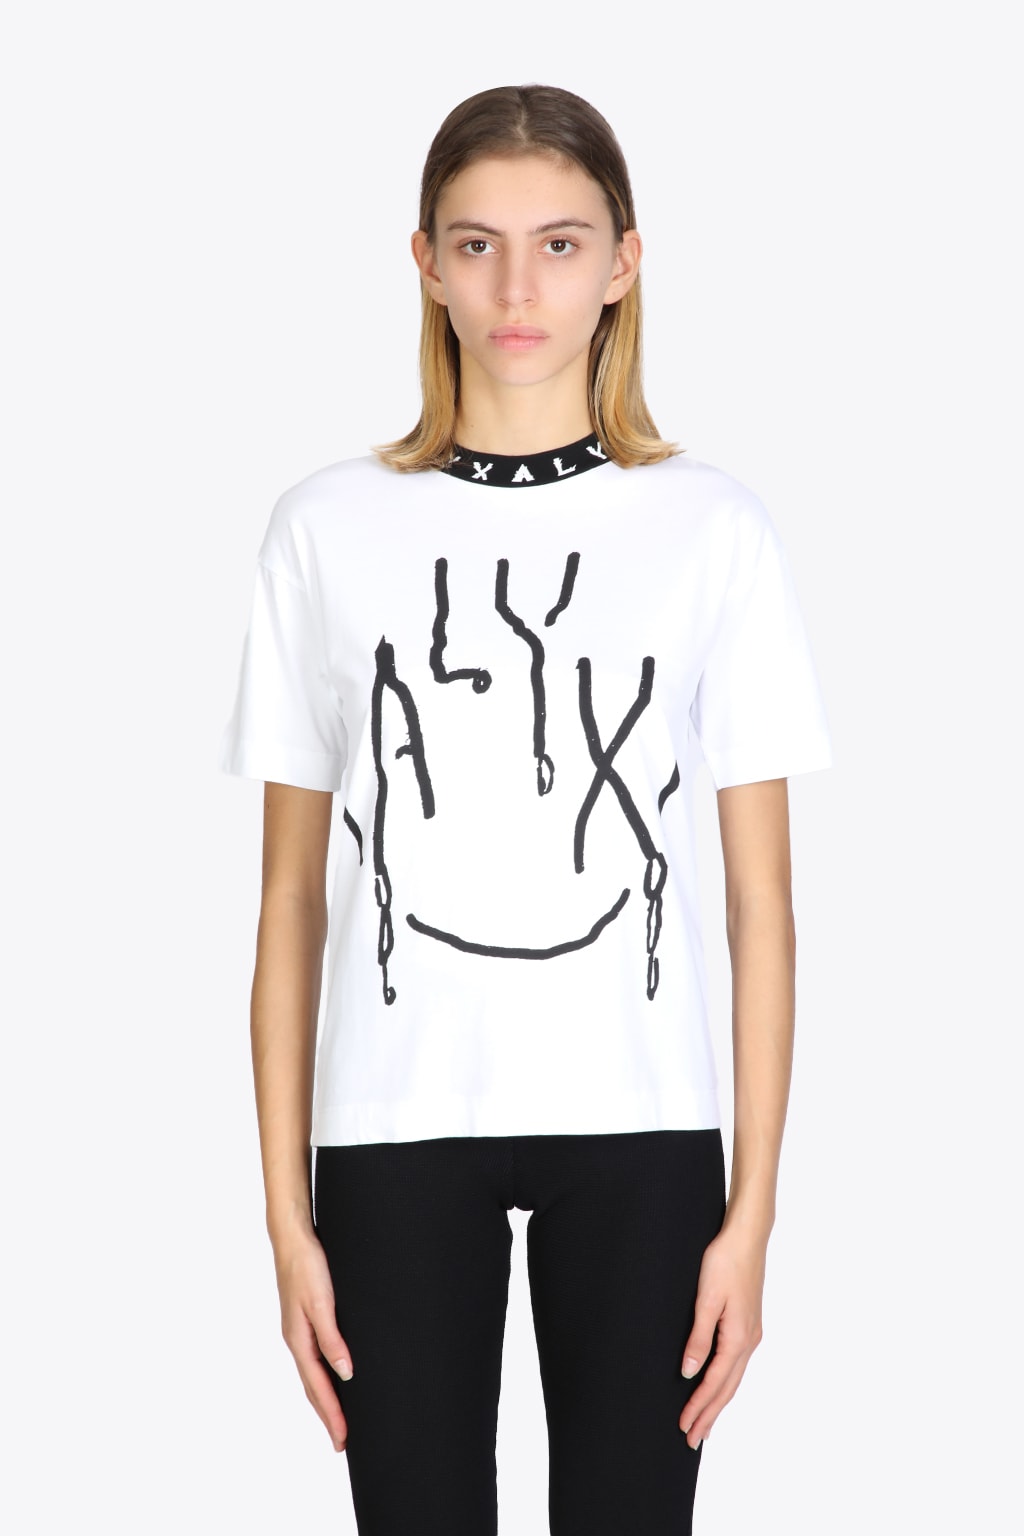 1017 ALYX 9SM Smiley Tee White cotton t-shirt with logo - Smiley tee